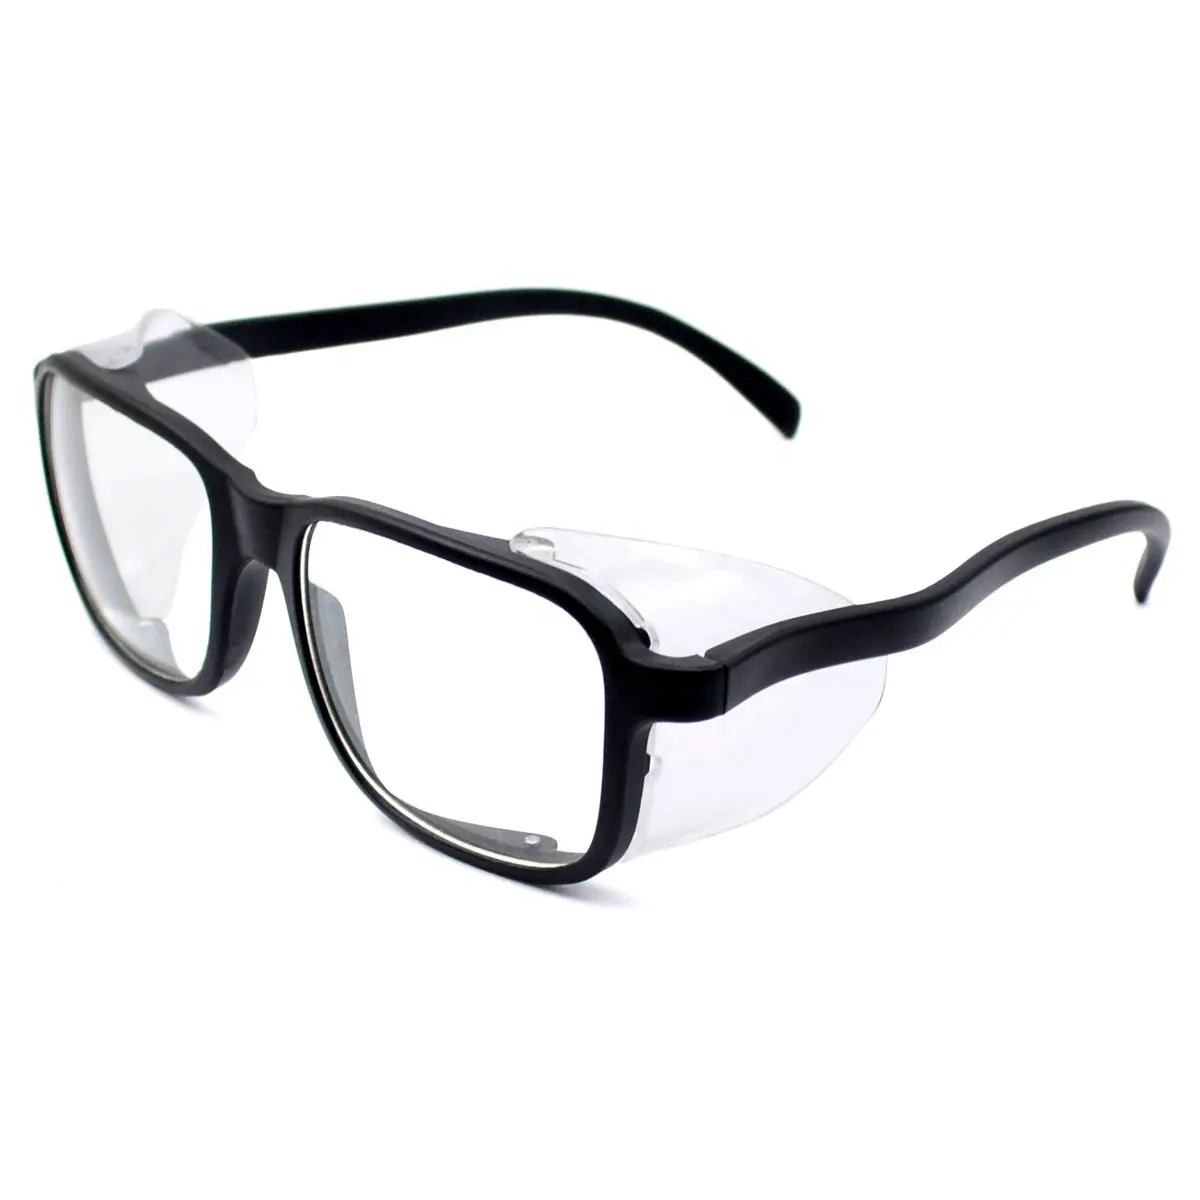 En166 Onbreekbare Zijschermen Werken Beveiliging Oogbescherming Veiligheidsbril Ansi Z87.1 Beschermende Bril